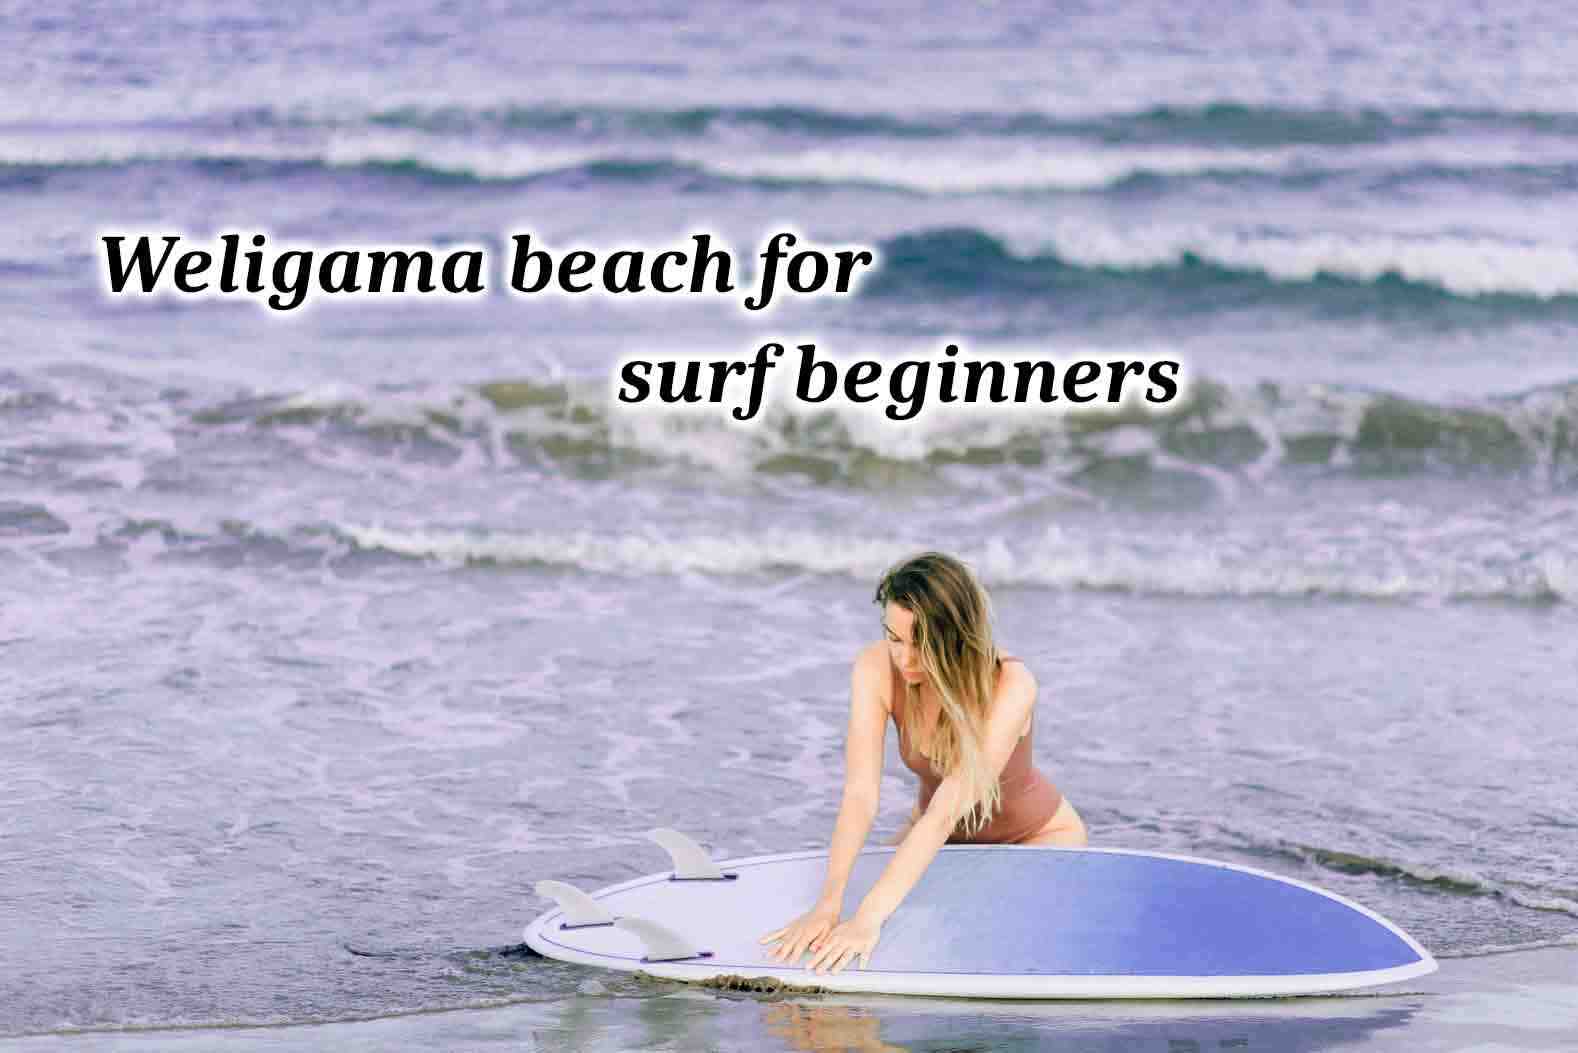 Comment se préparer à surfer des grosses vagues ?